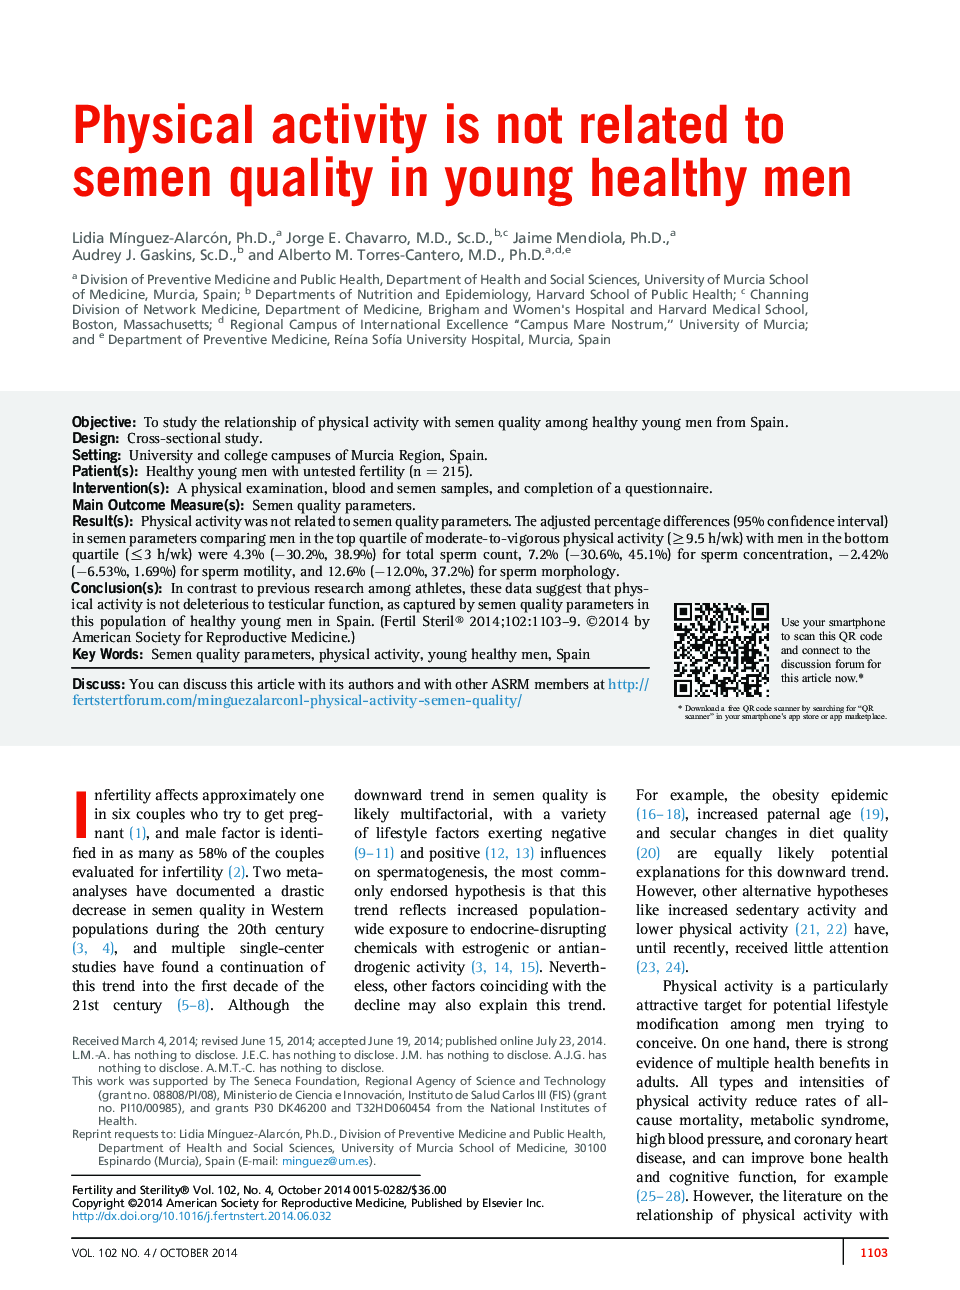 فعالیت بدنی با کیفیت منی در مردان سالم جوان رابطه ندارد 